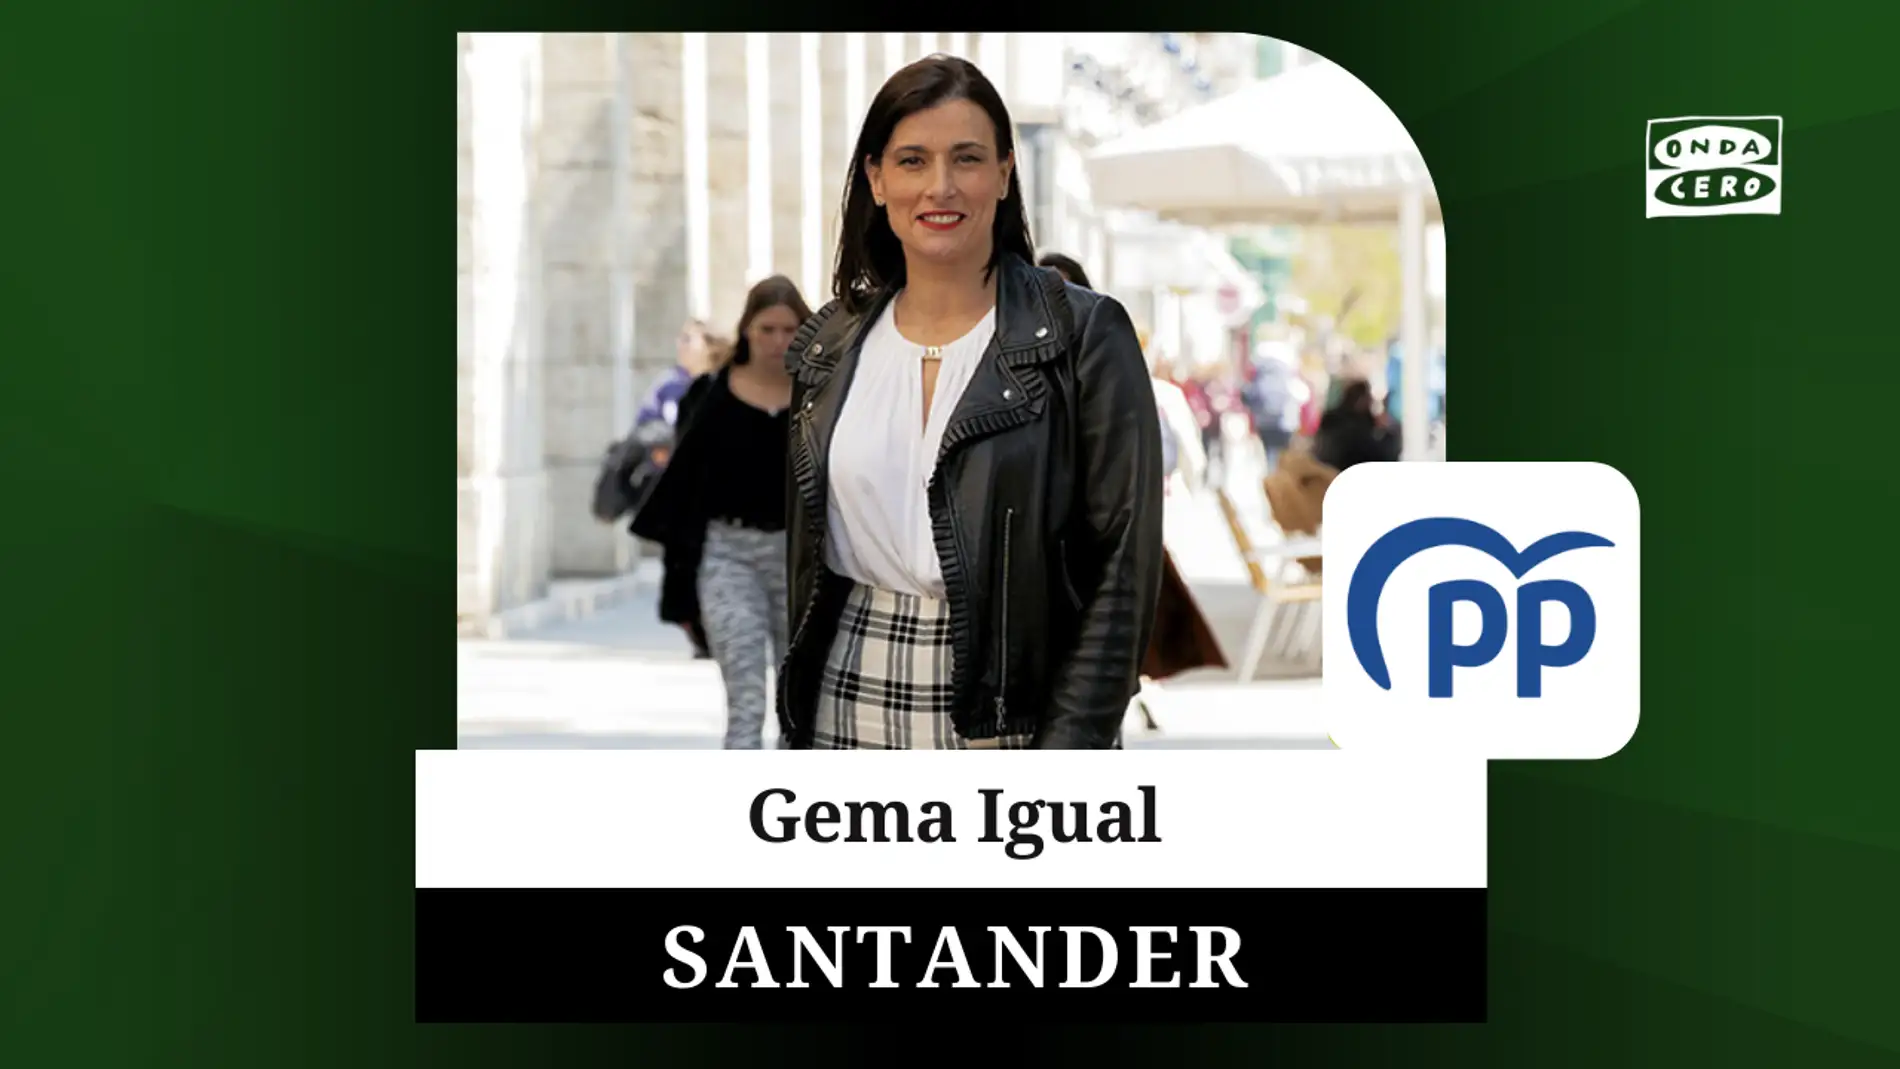 Gema Igual, la primer mujer en llegar a la alcaldía de Santander